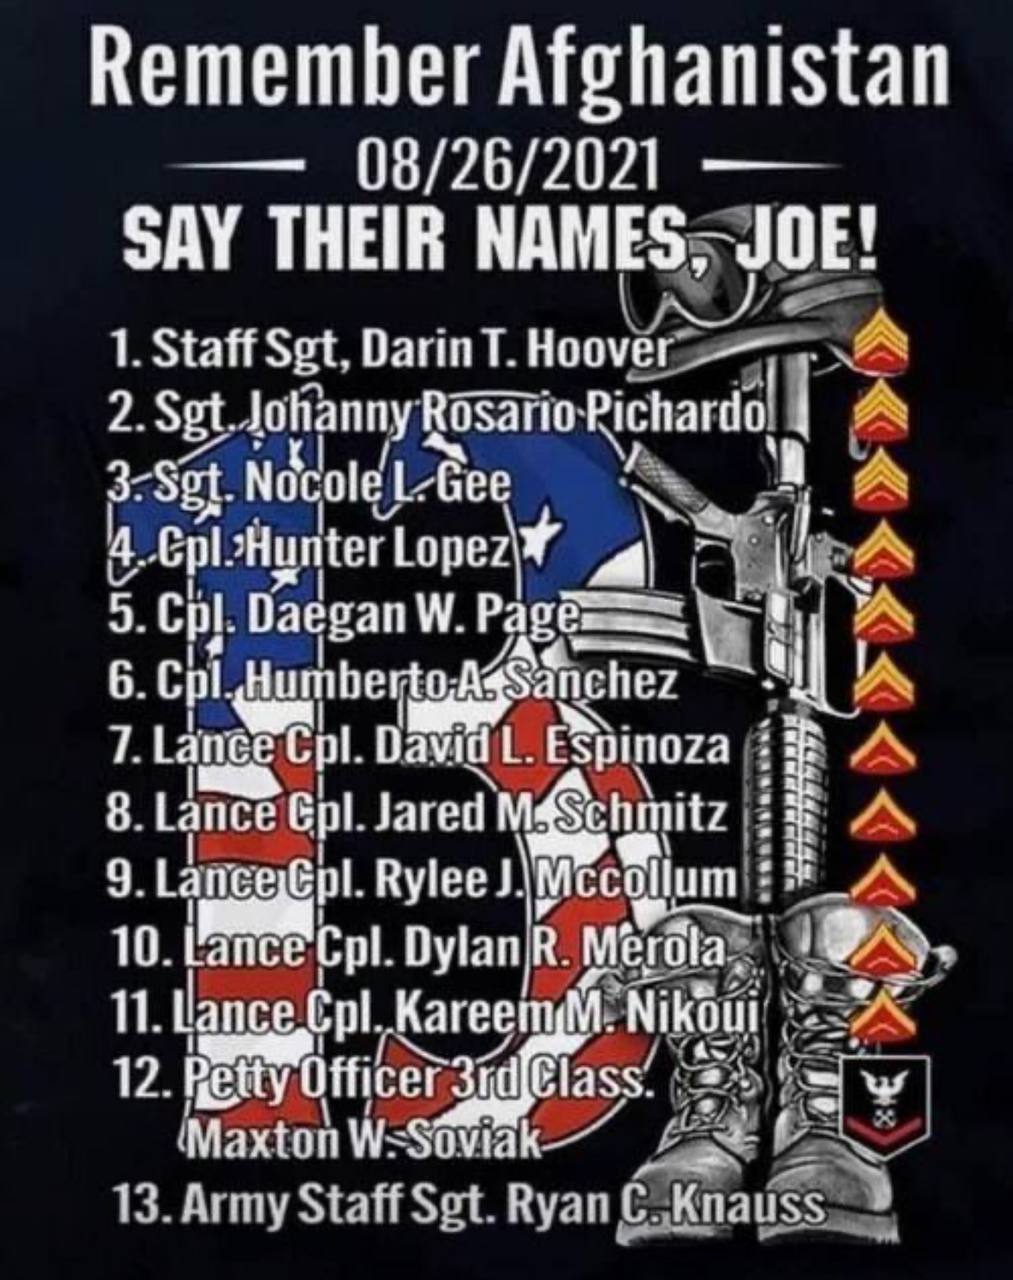 Say There Names Joe